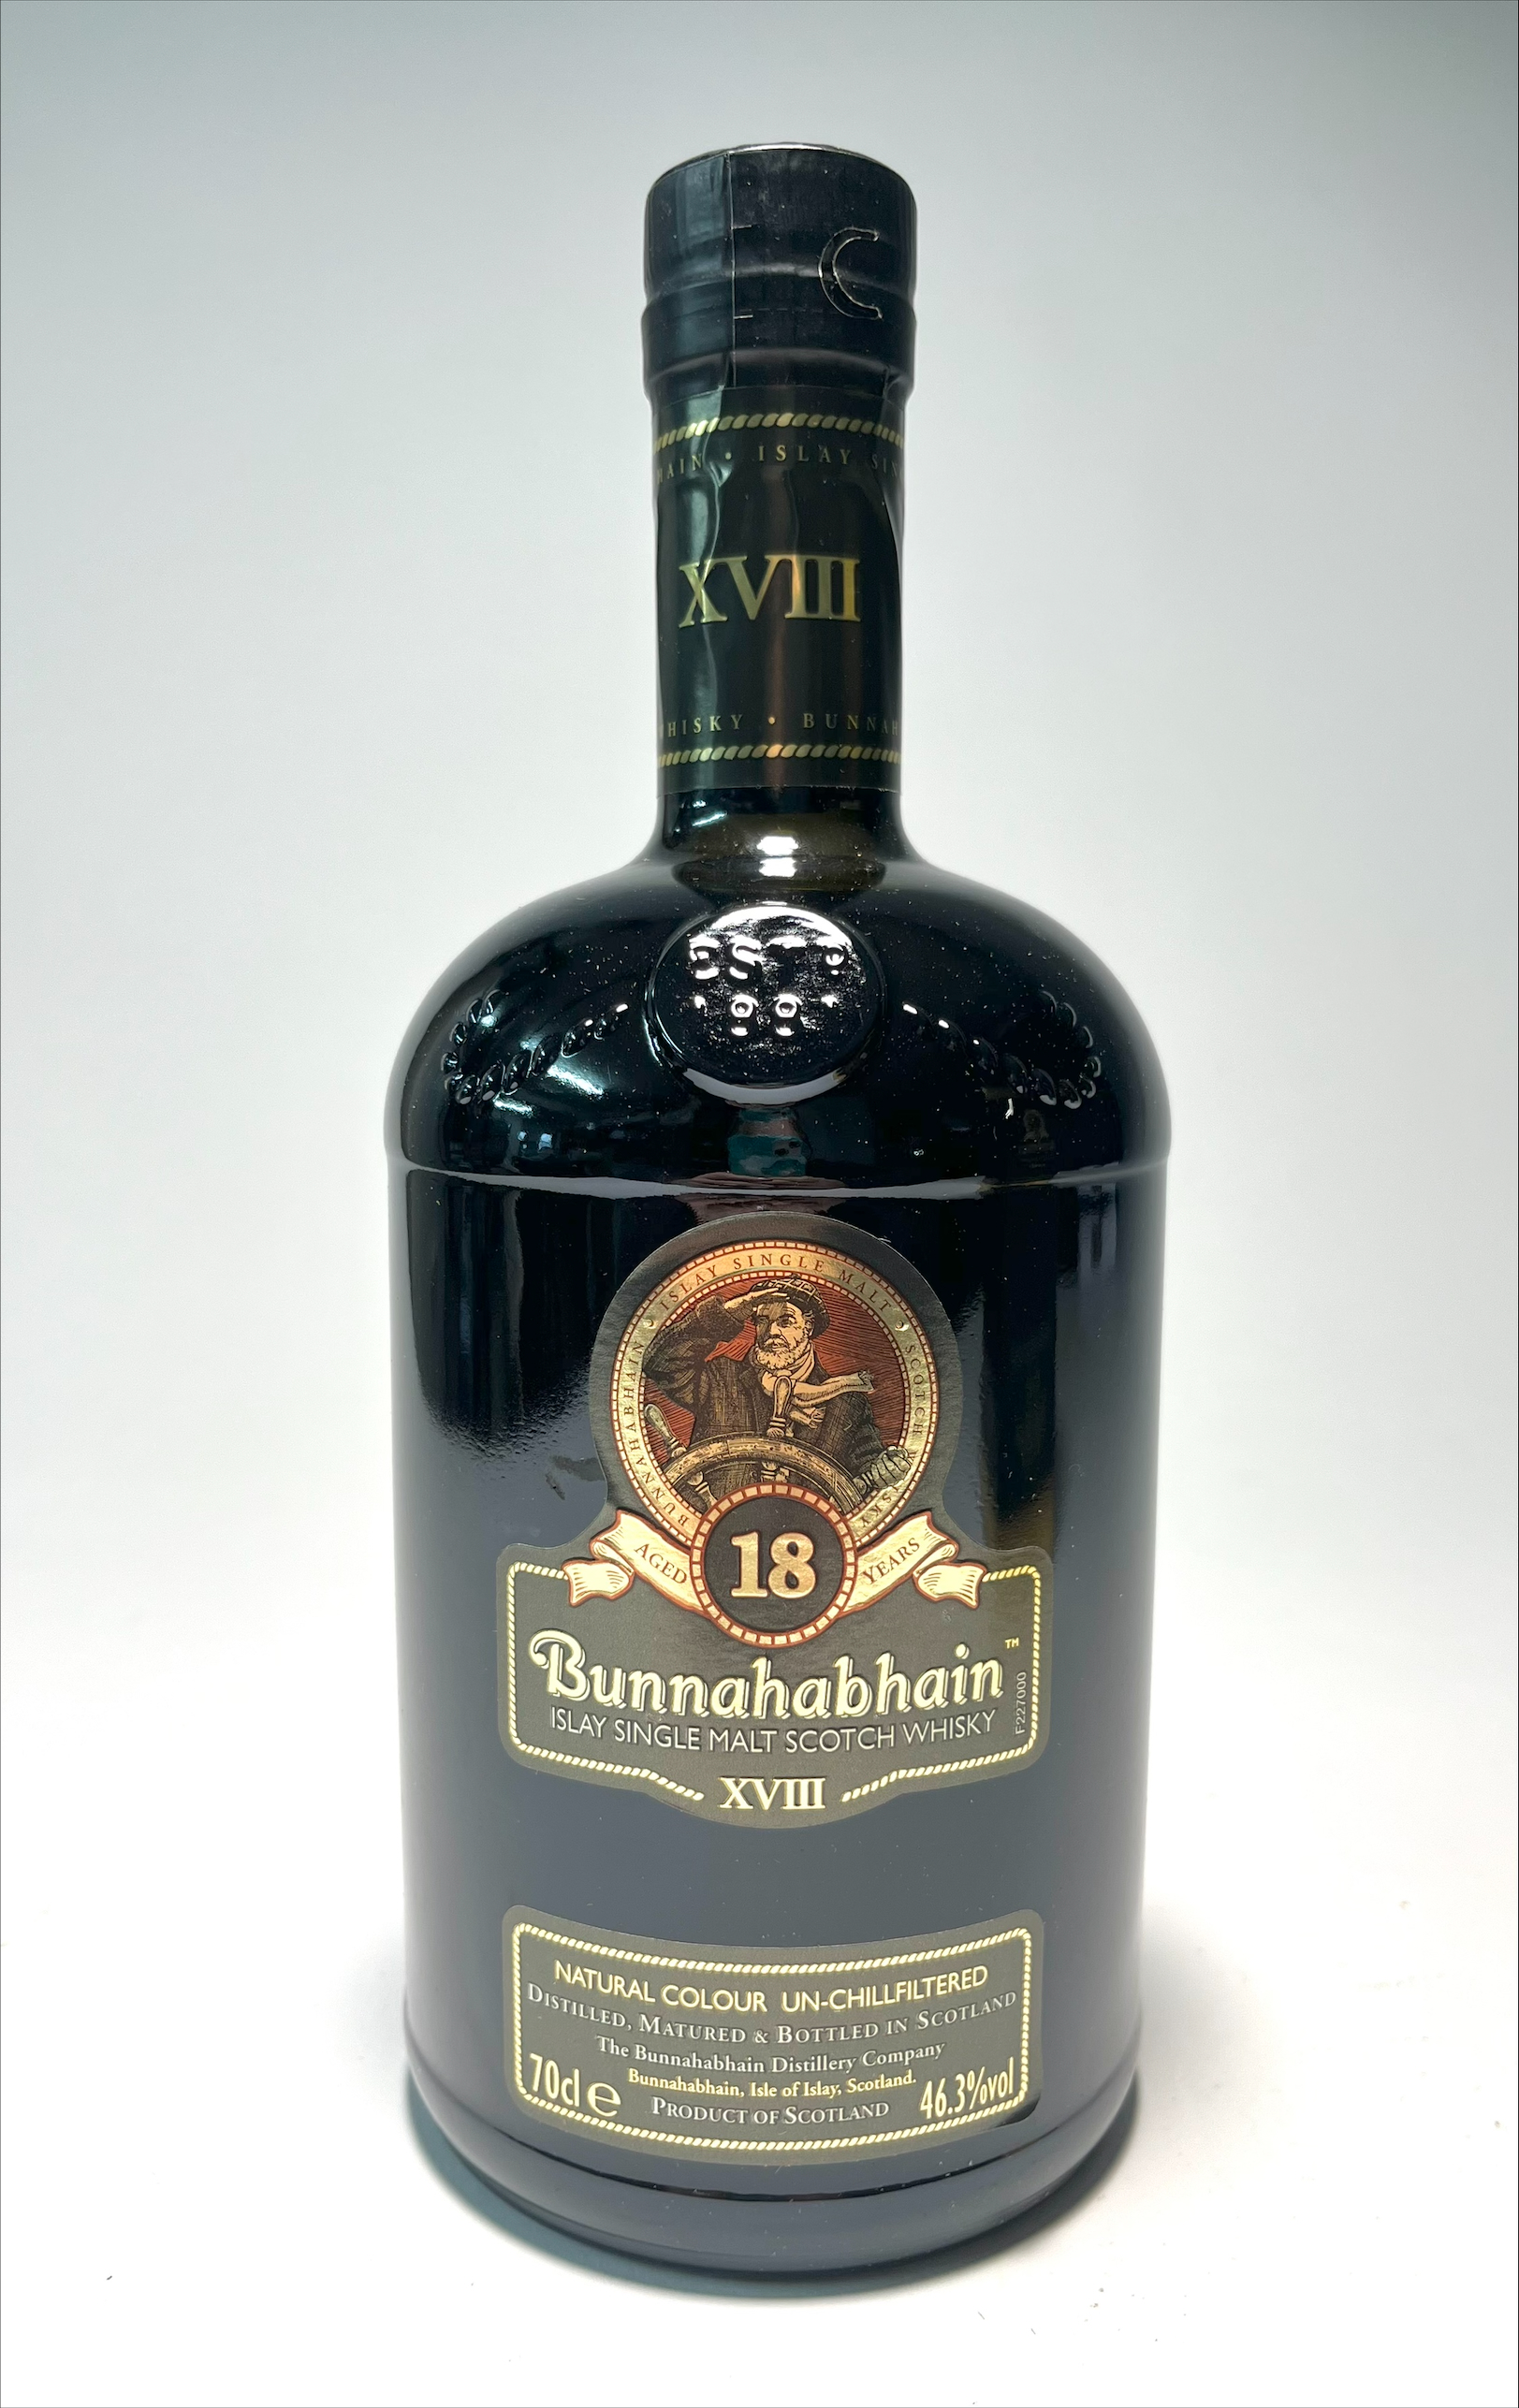 A bottle of Bunnahabhain Islay Single Malt Scotch Whisky XVIII, The Bunnahabhain Distillery - Image 2 of 2